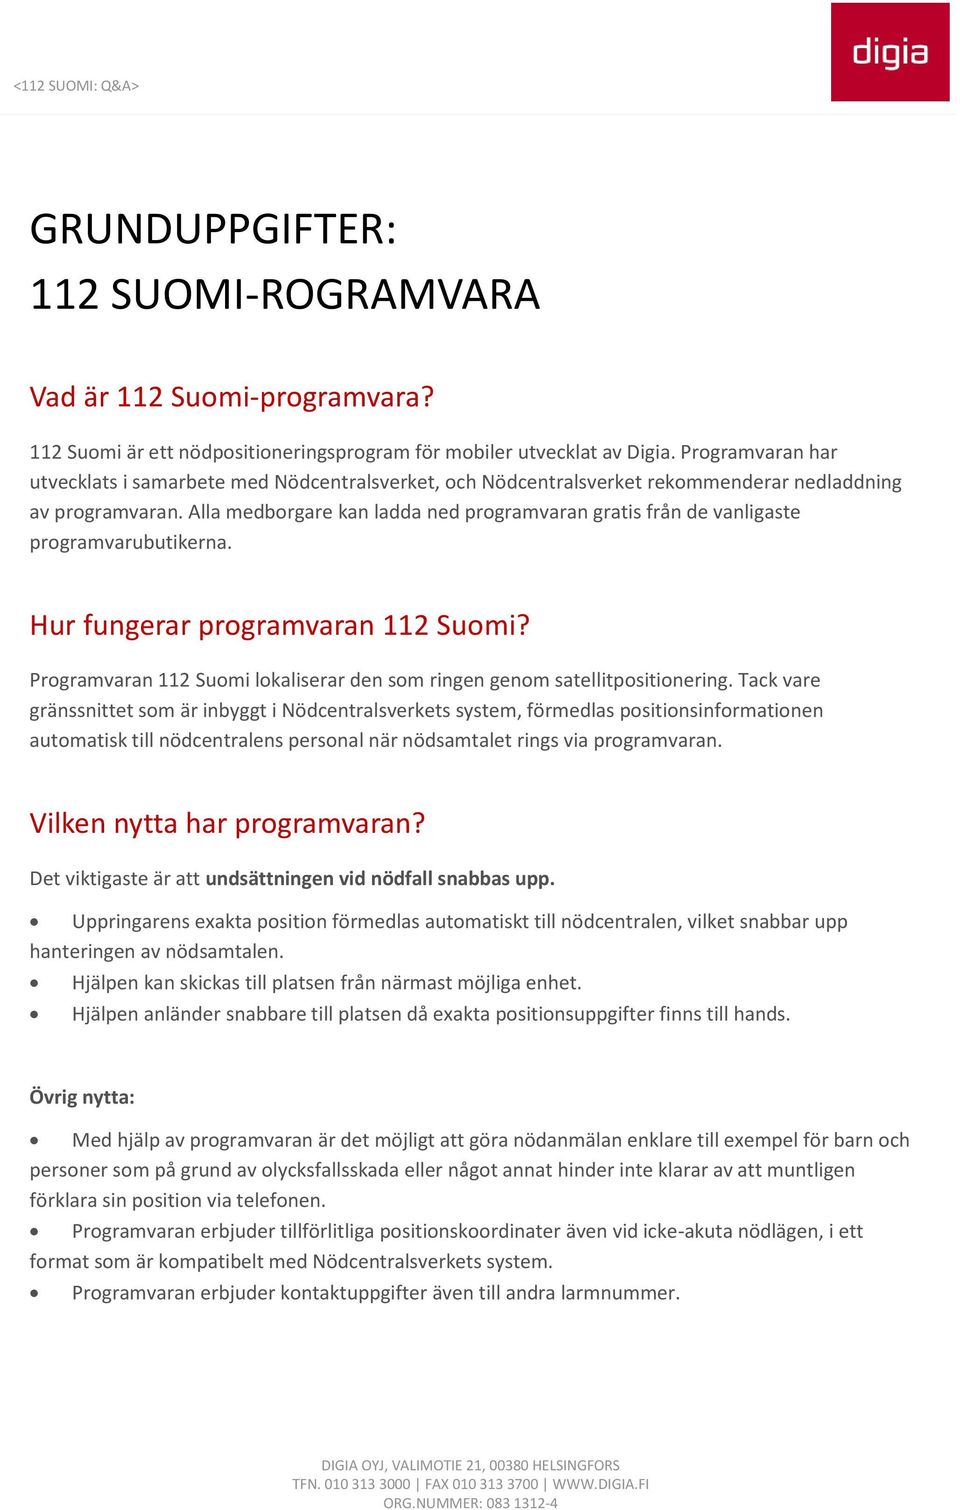 Alla medborgare kan ladda ned programvaran gratis från de vanligaste programvarubutikerna. Hur fungerar programvaran 112 Suomi?